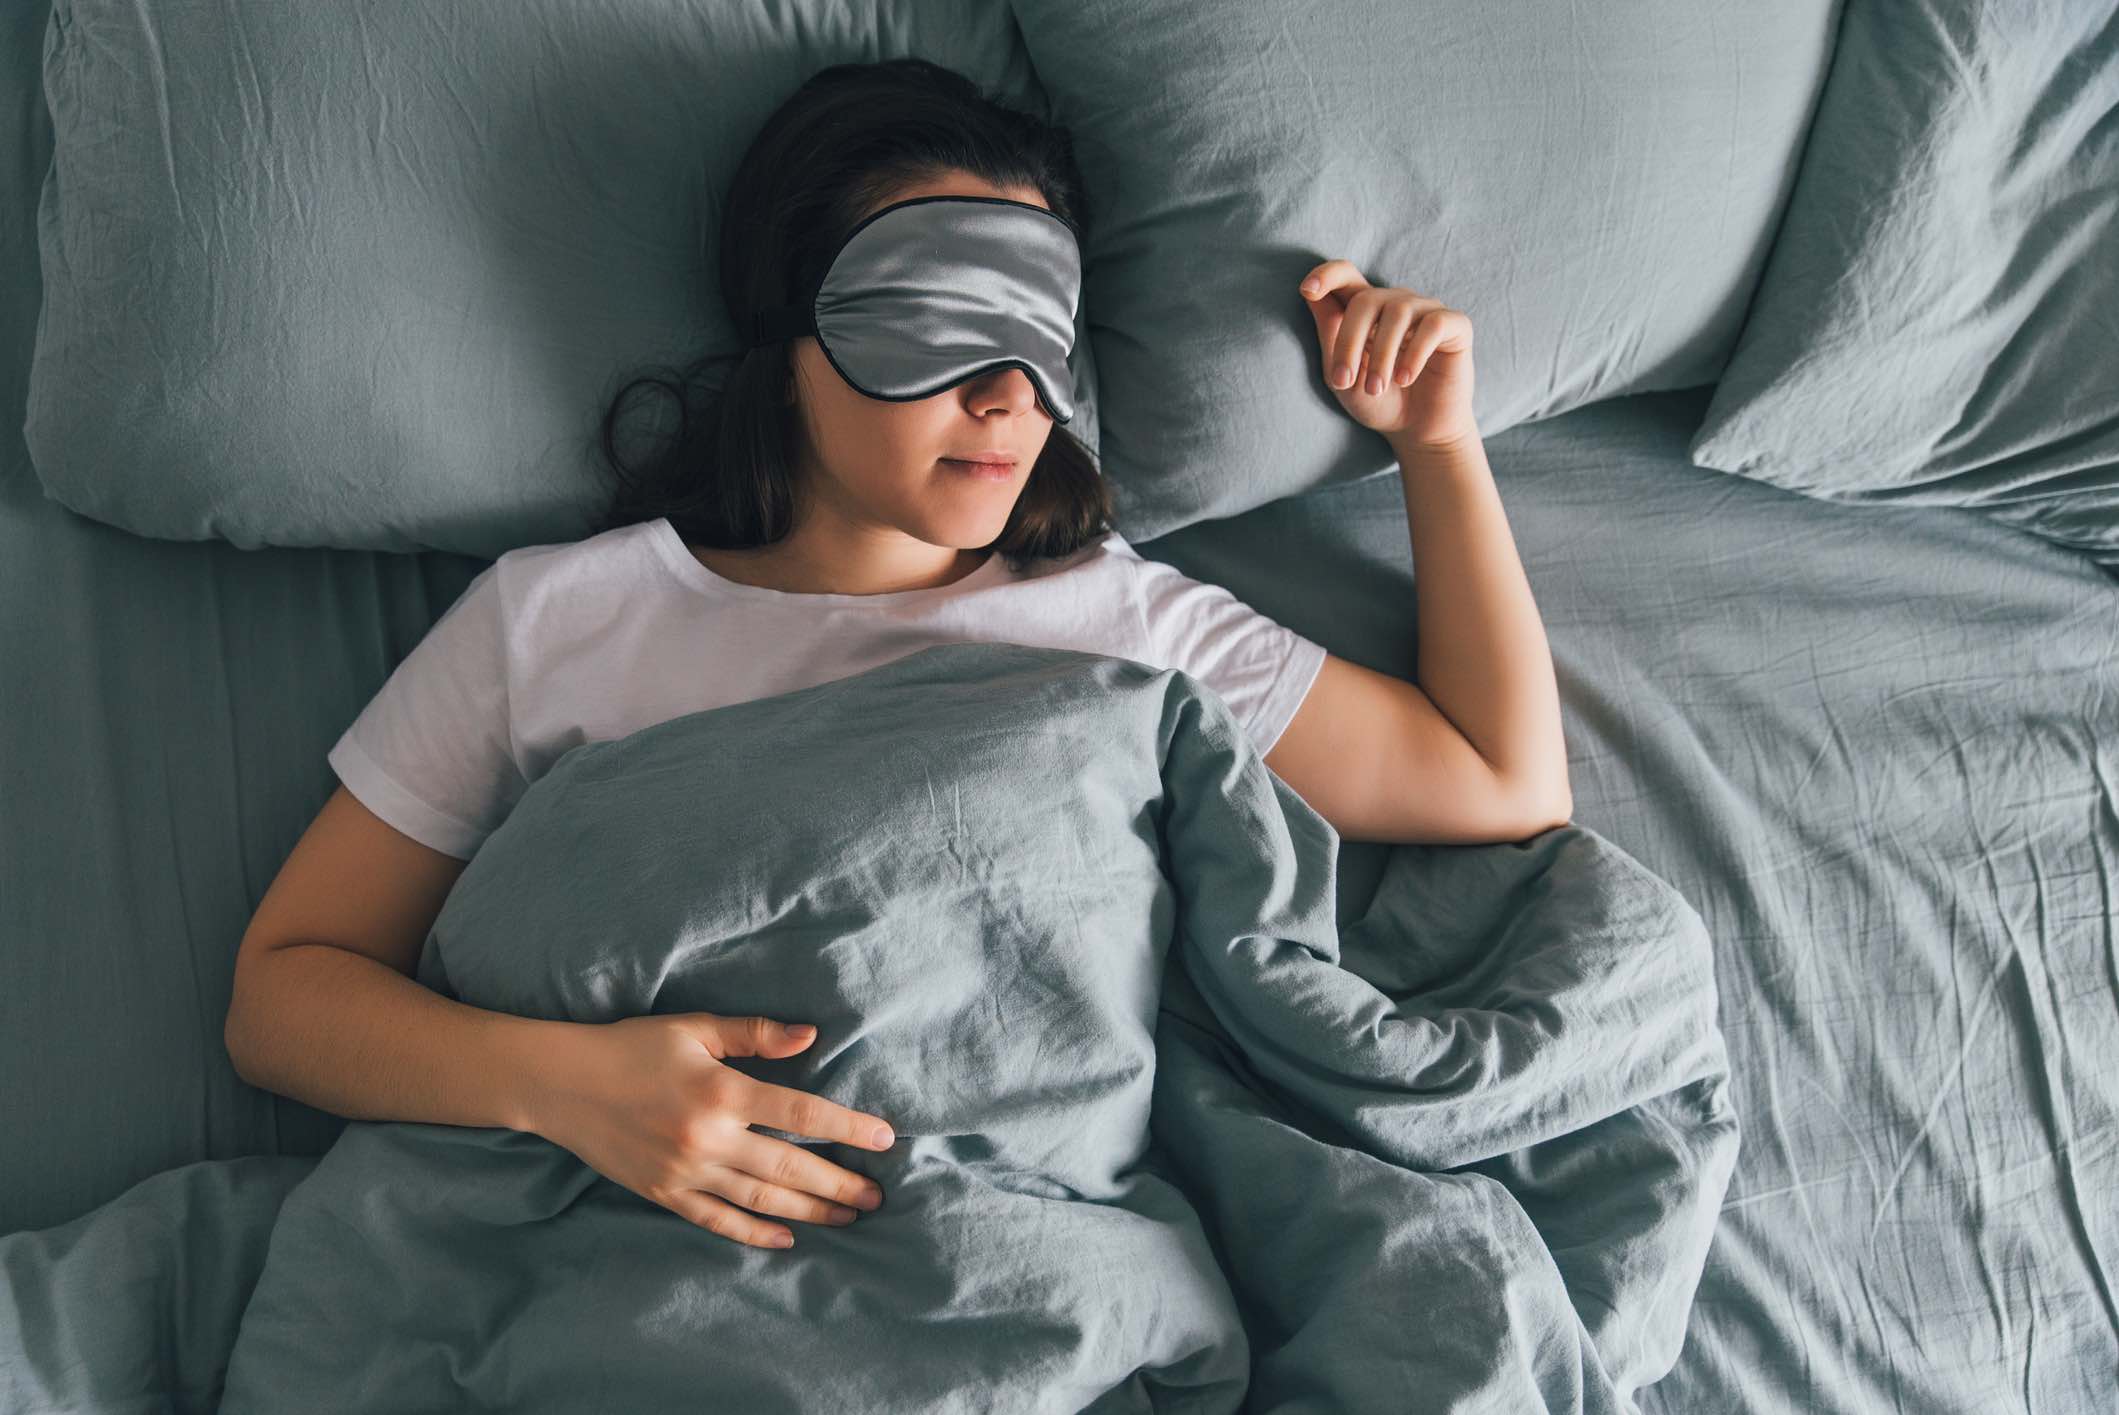 Επιστήμονες εξηγούν: Πώς ένας καλός ύπνος ξεκινάει από όταν είμαστε ξύπνιοι – Έξυπνες συμβουλές